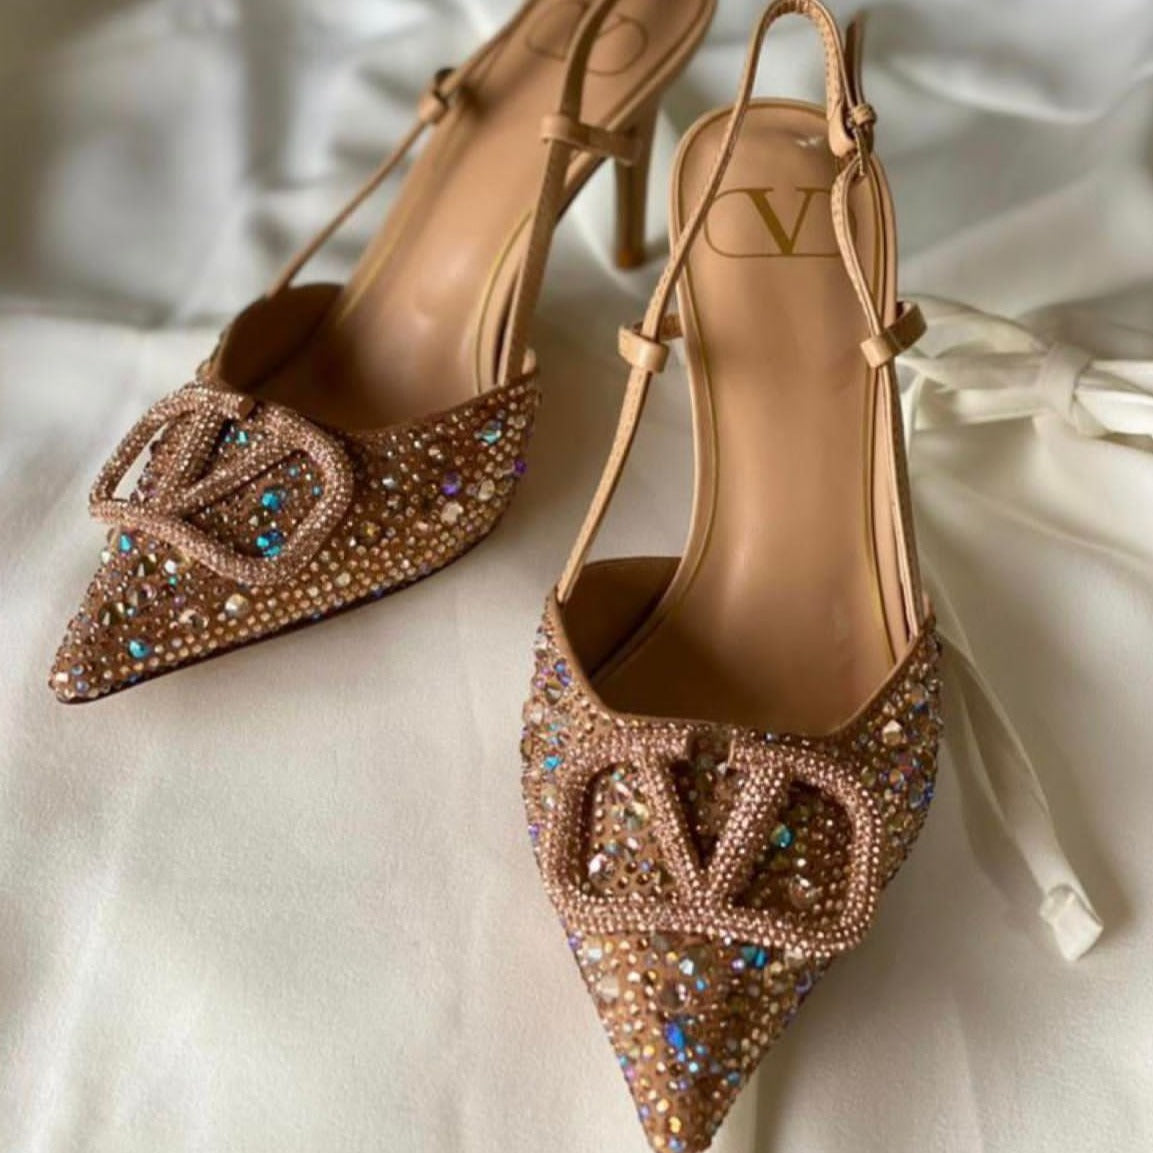 Amazing valento heels - AmazingBaba